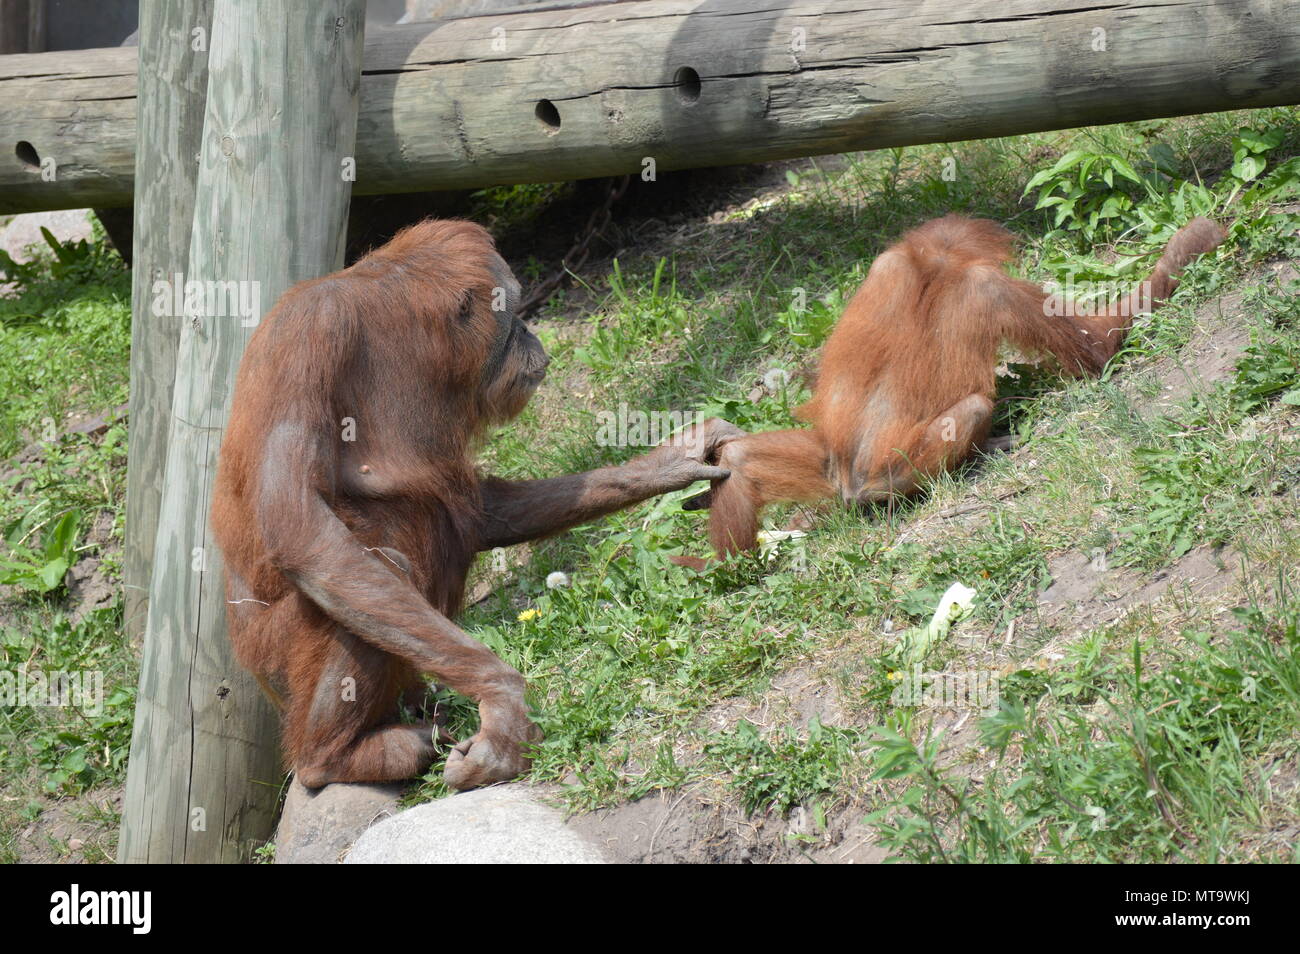 Orangutan parenting hi-res stock photography and images - Alamy